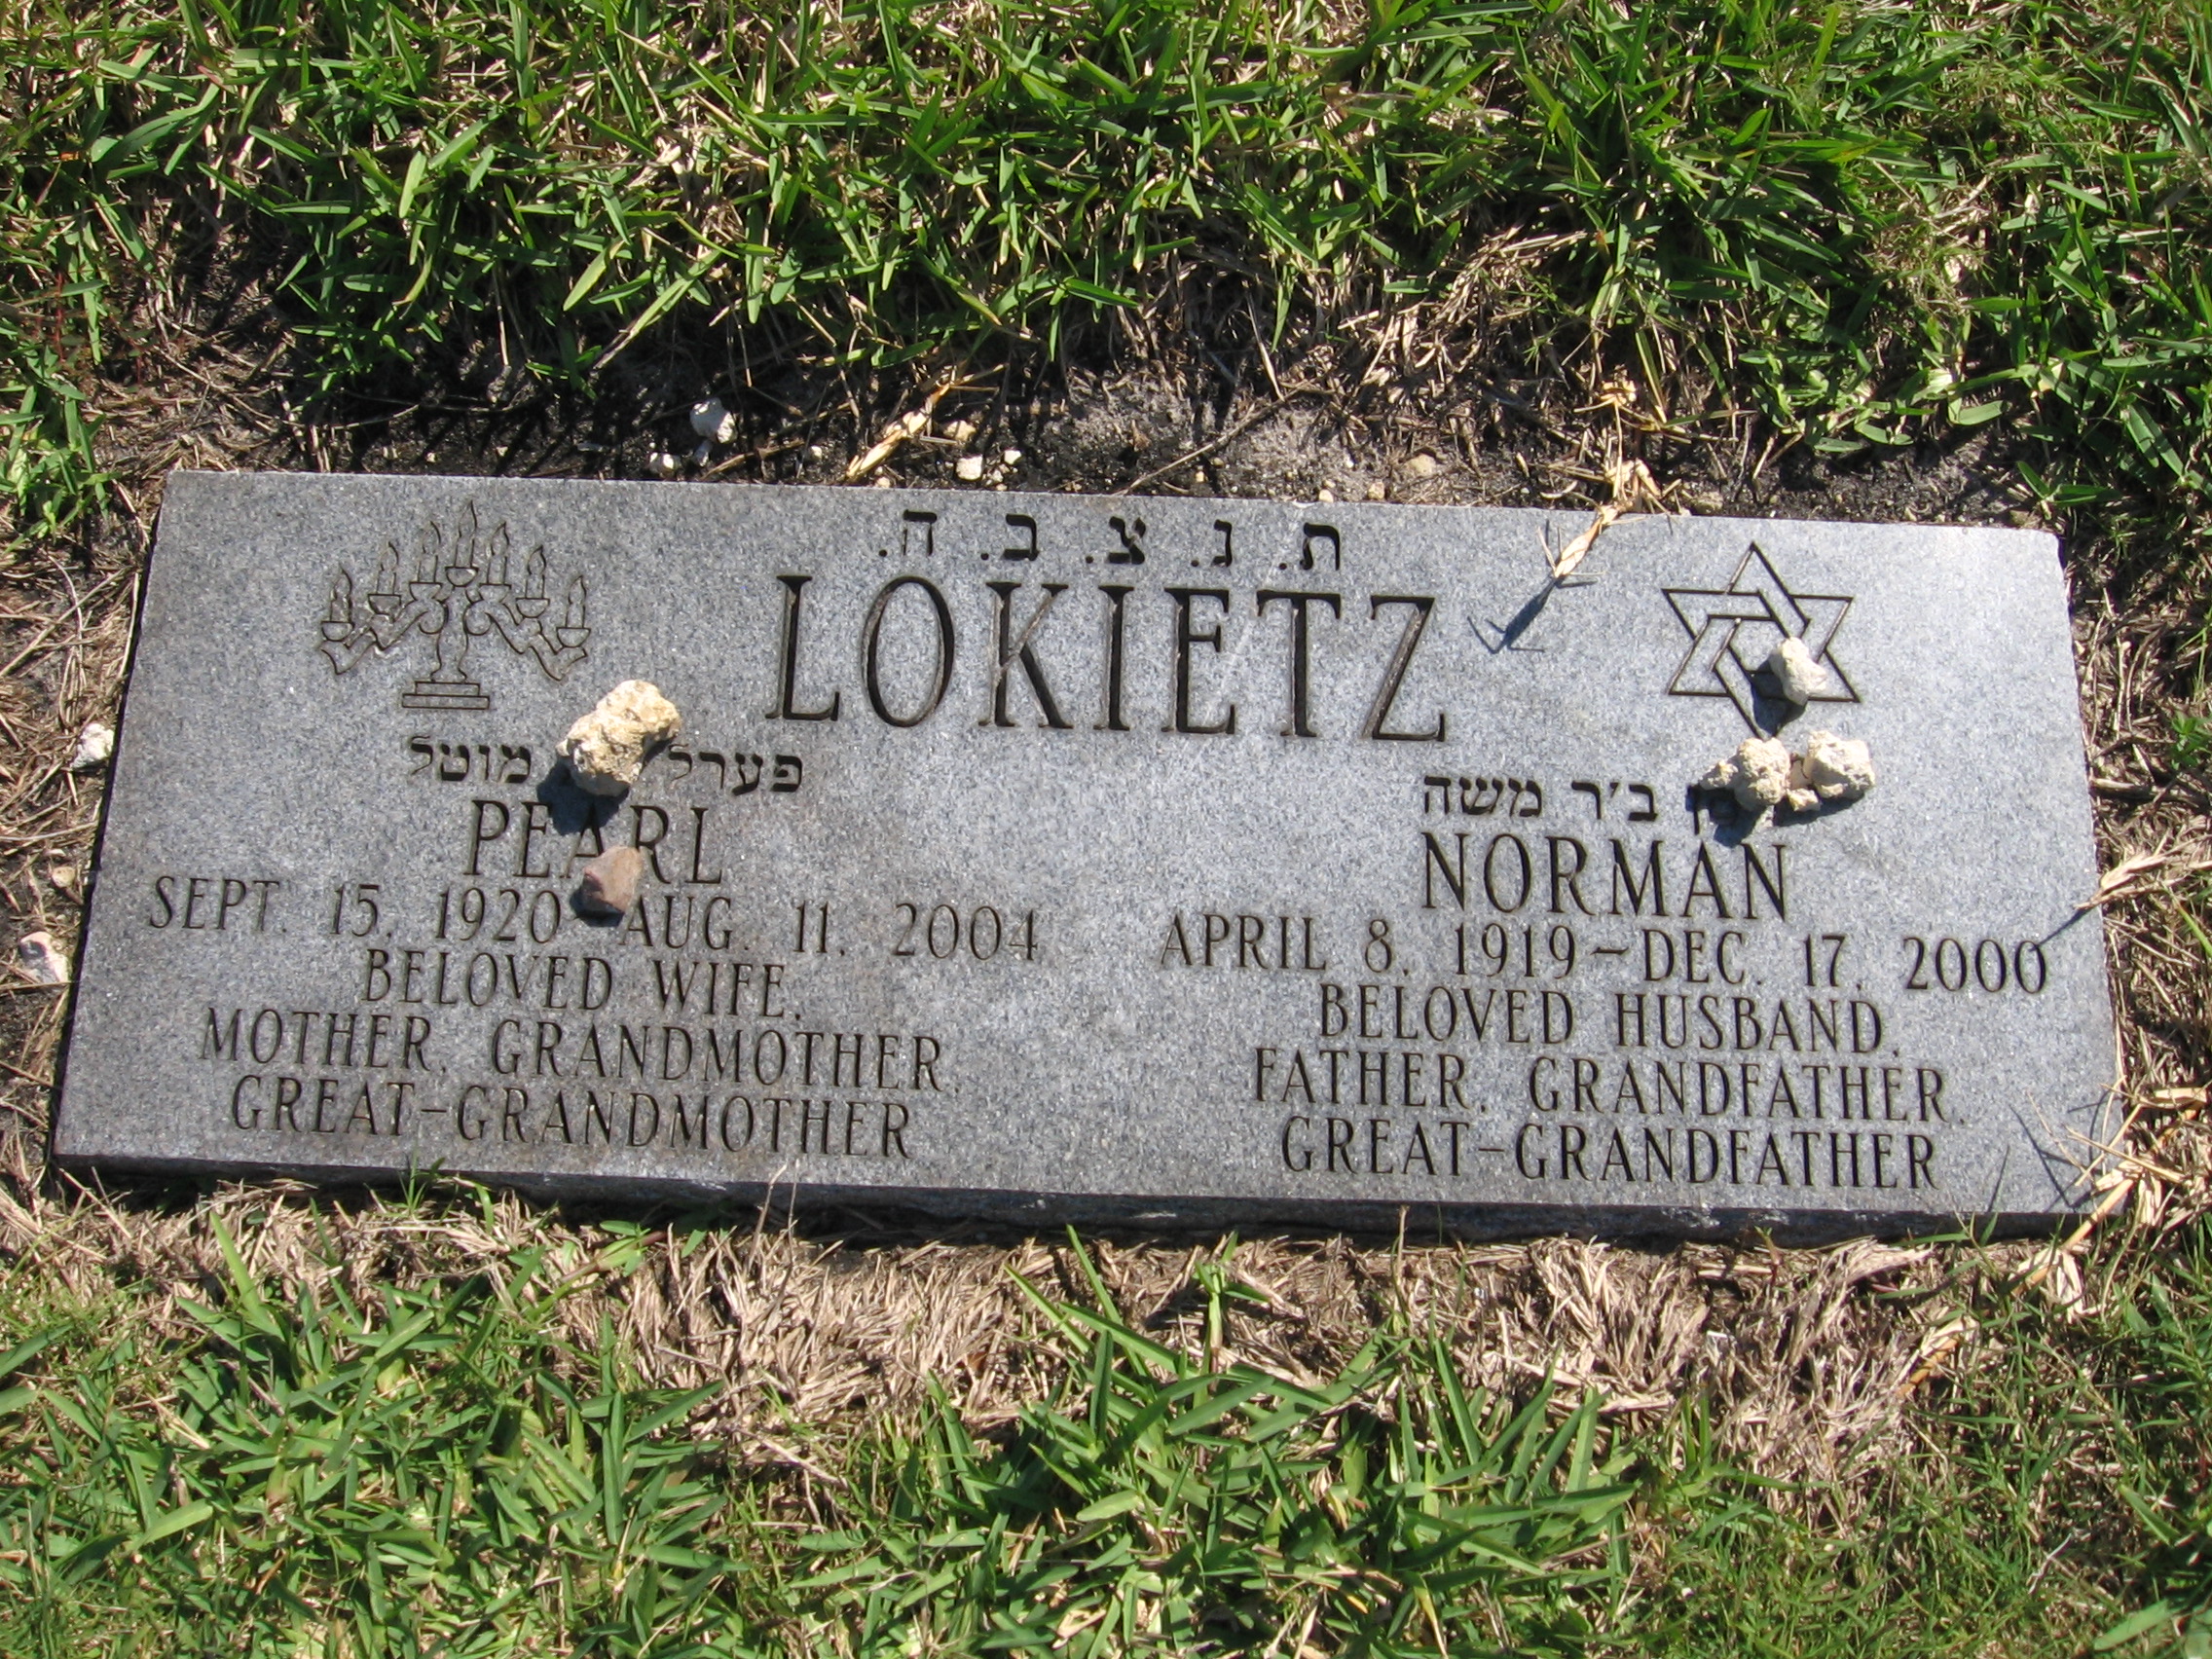 Norman Lokietz